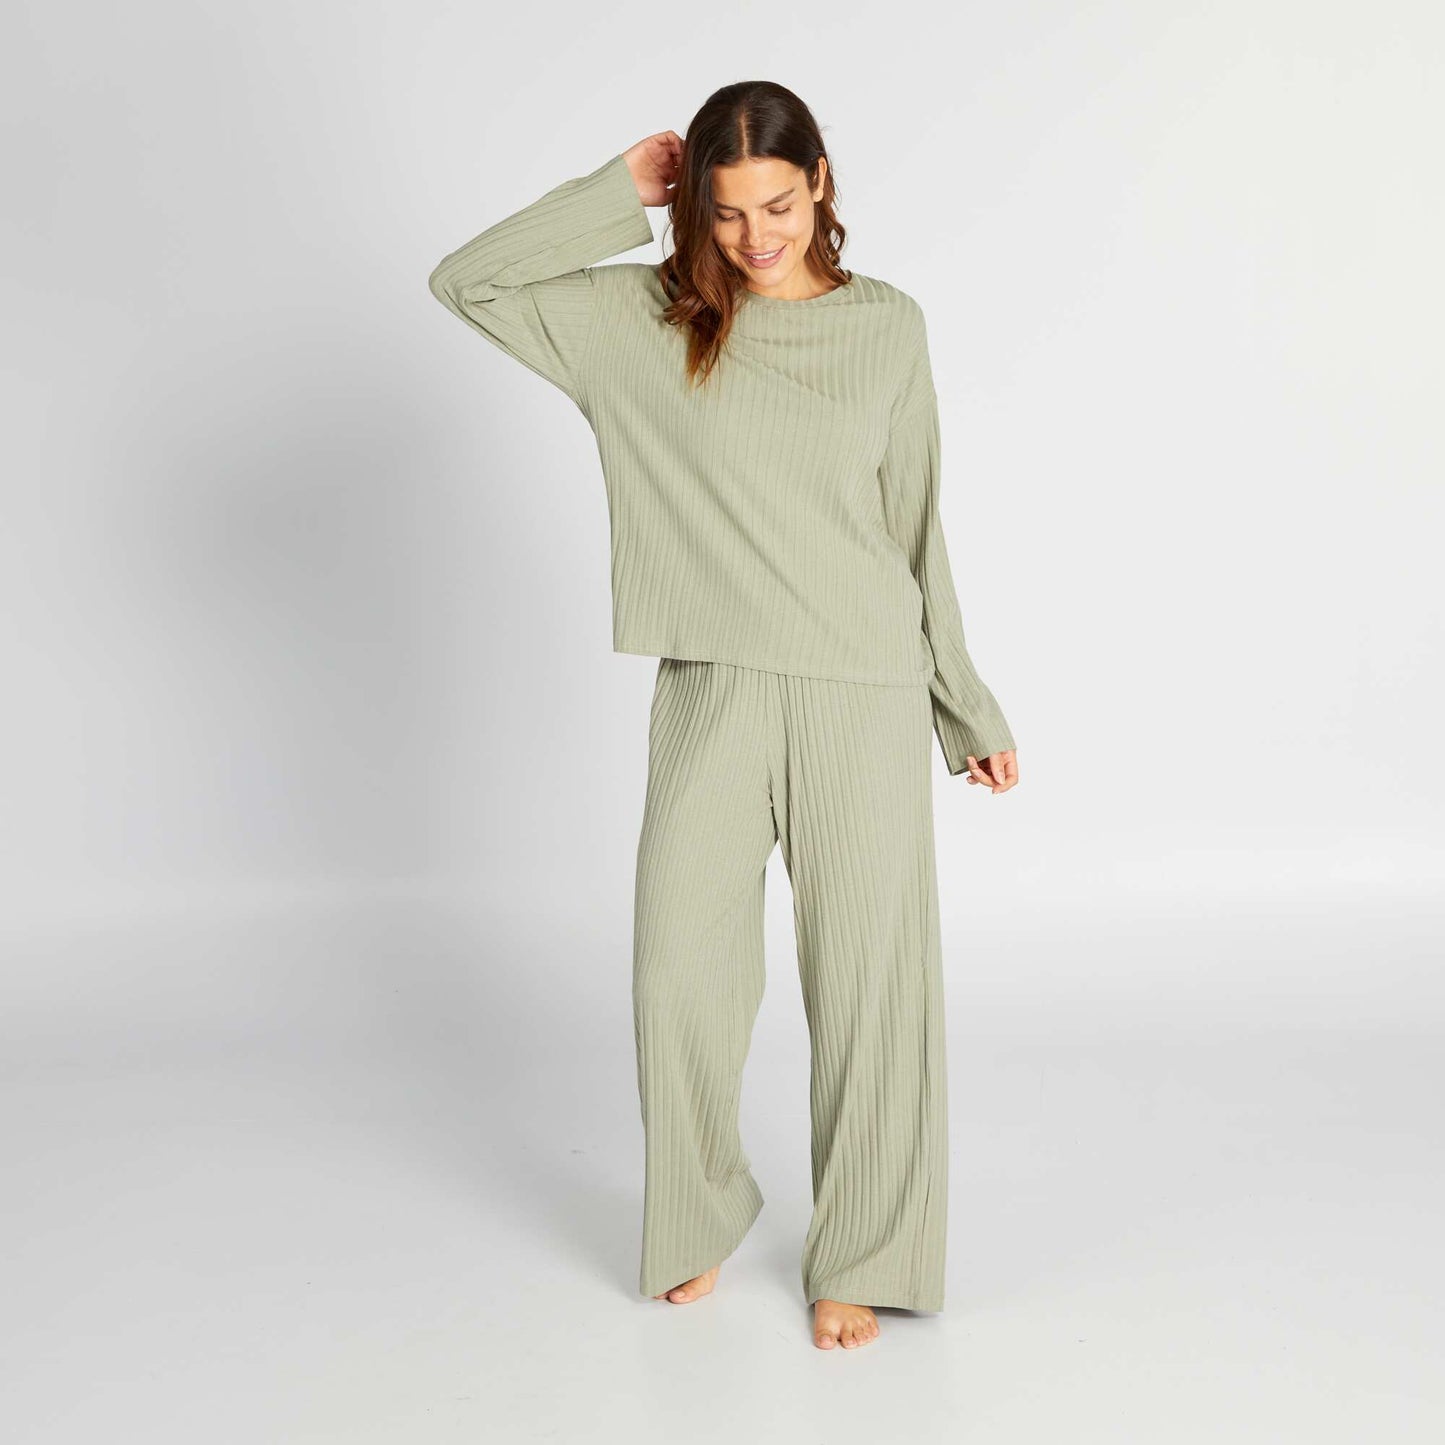 Ensemble pyjama c tel t-shirt + pantalon - 2 pi ces Vert